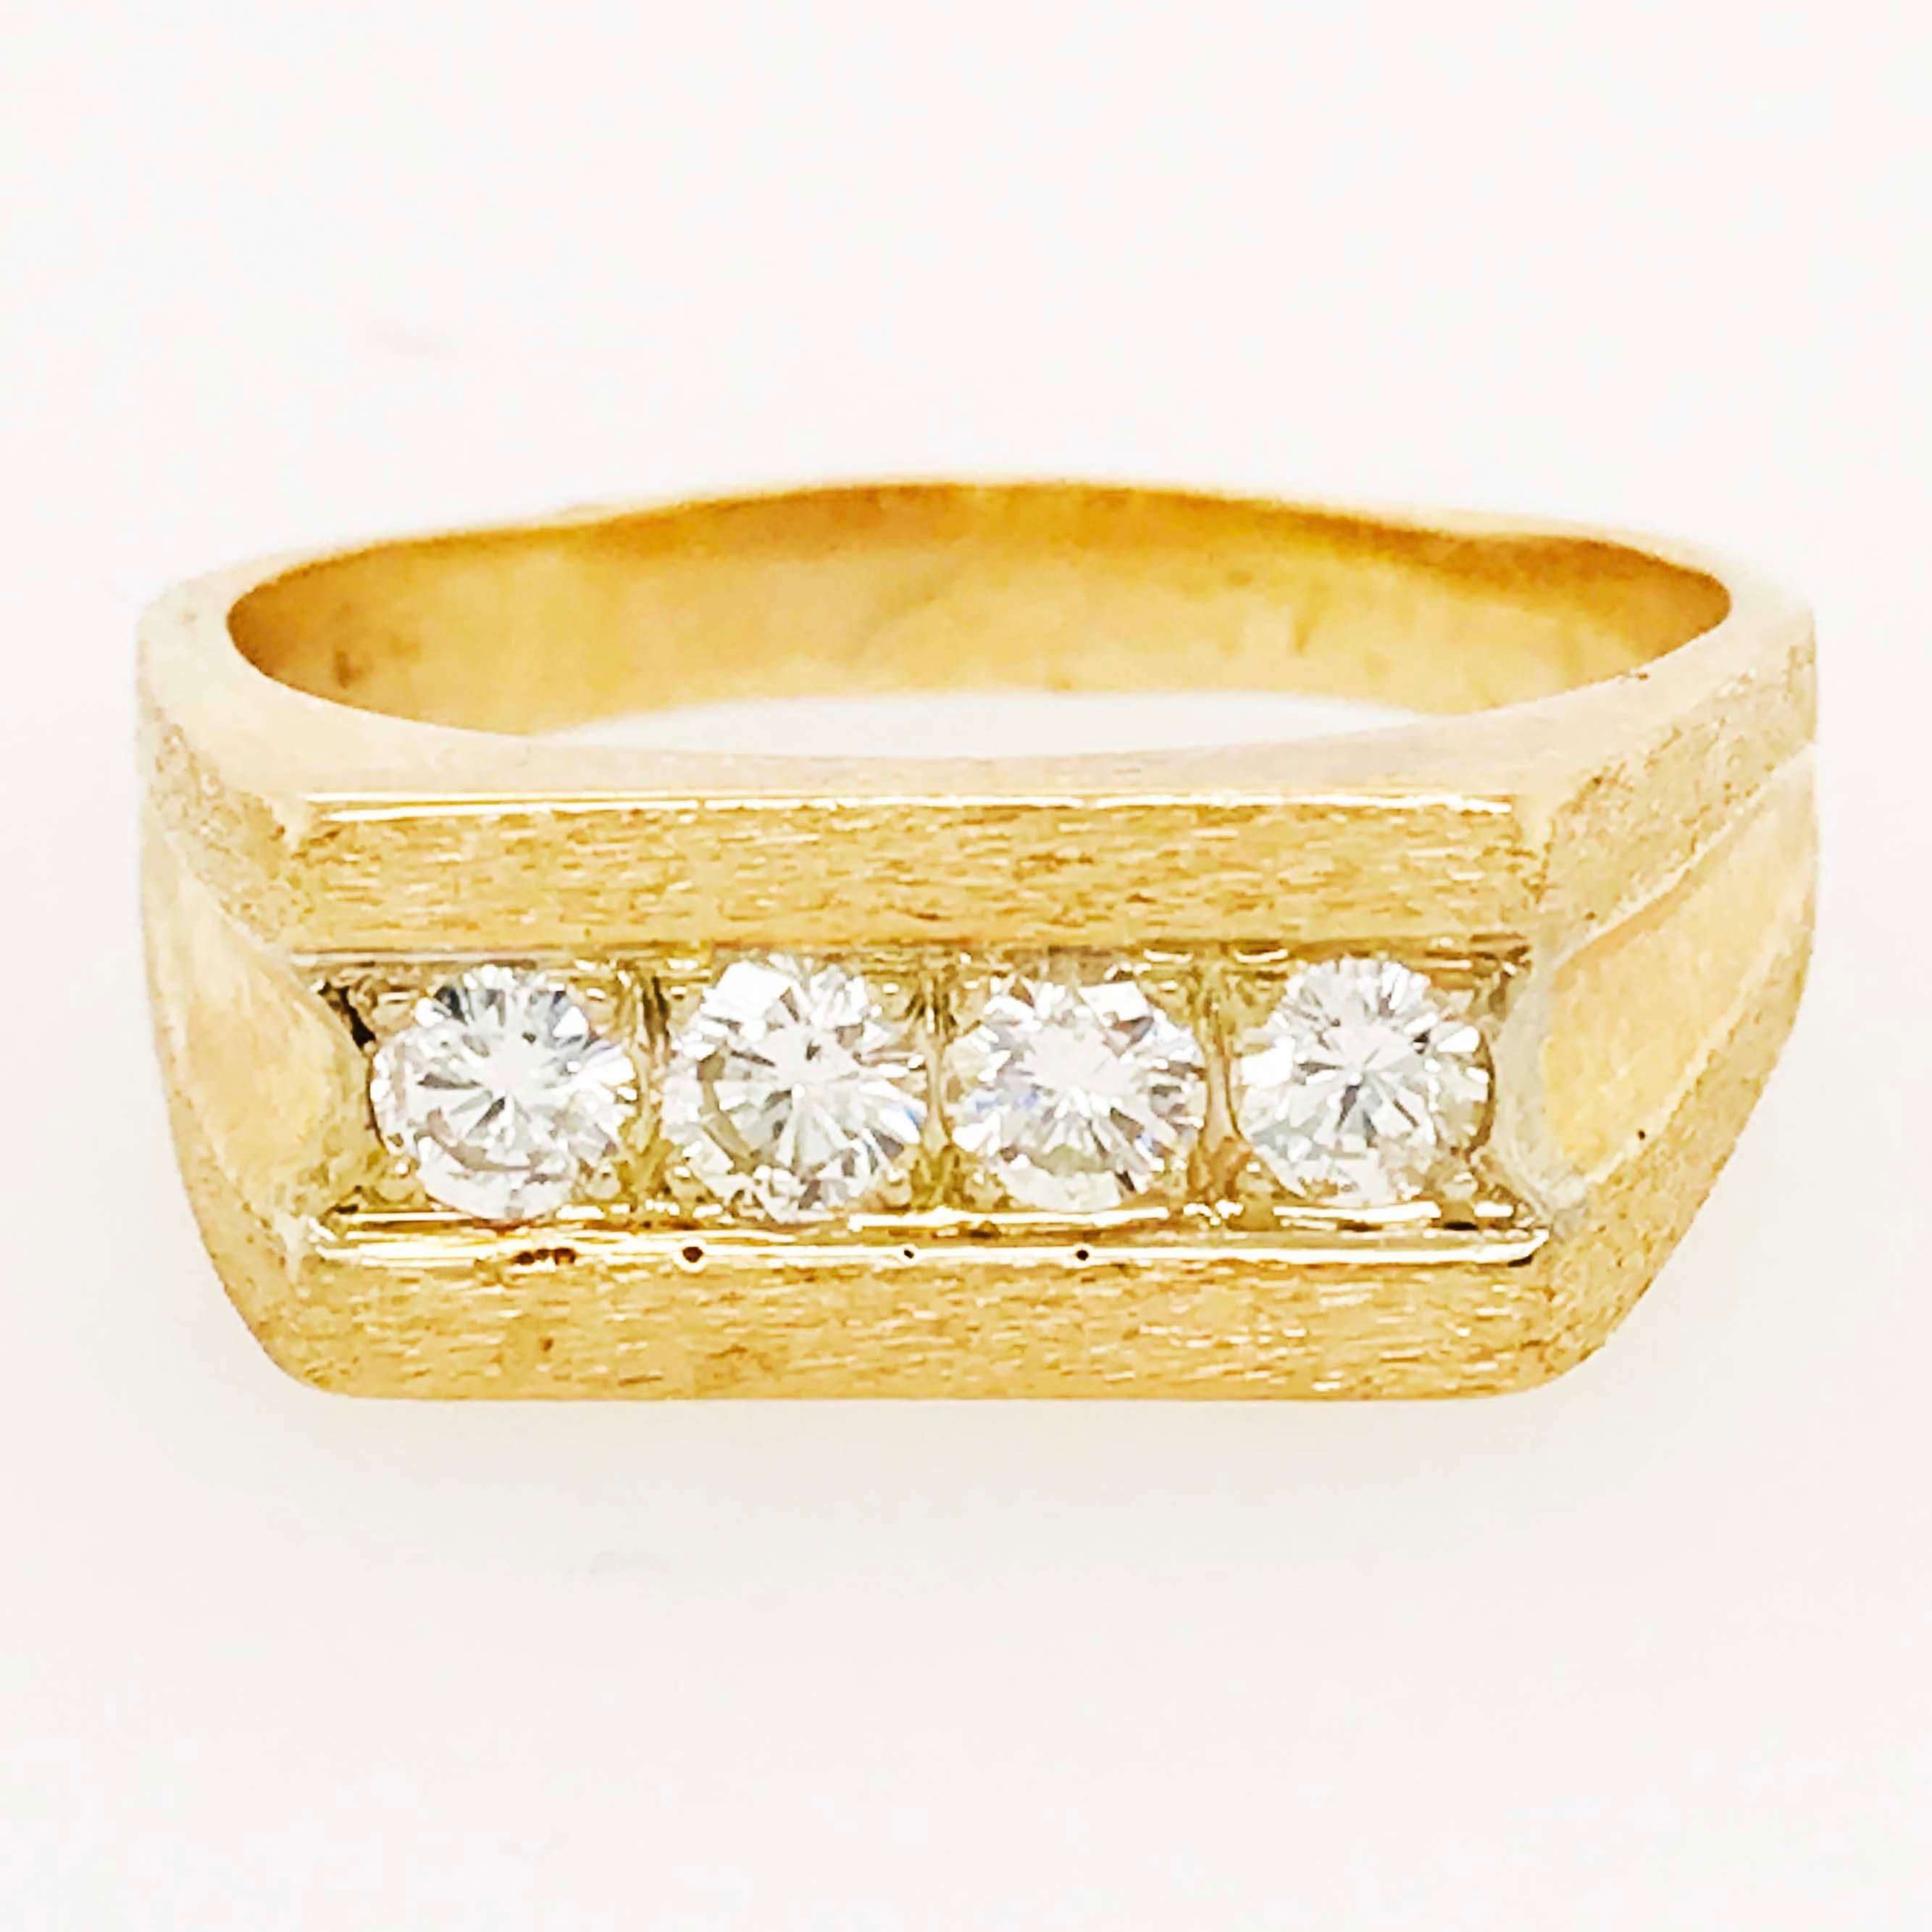 Der maßgefertigte Diamantring ist ein Ehering für Männer mit echten, natürlichen, runden Diamanten! Die Diamanten sind strahlend weiß und sehen in der Fassung aus 14-karätigem Gelbgold fantastisch aus. Der obere Teil des Rings hat eine quadratische